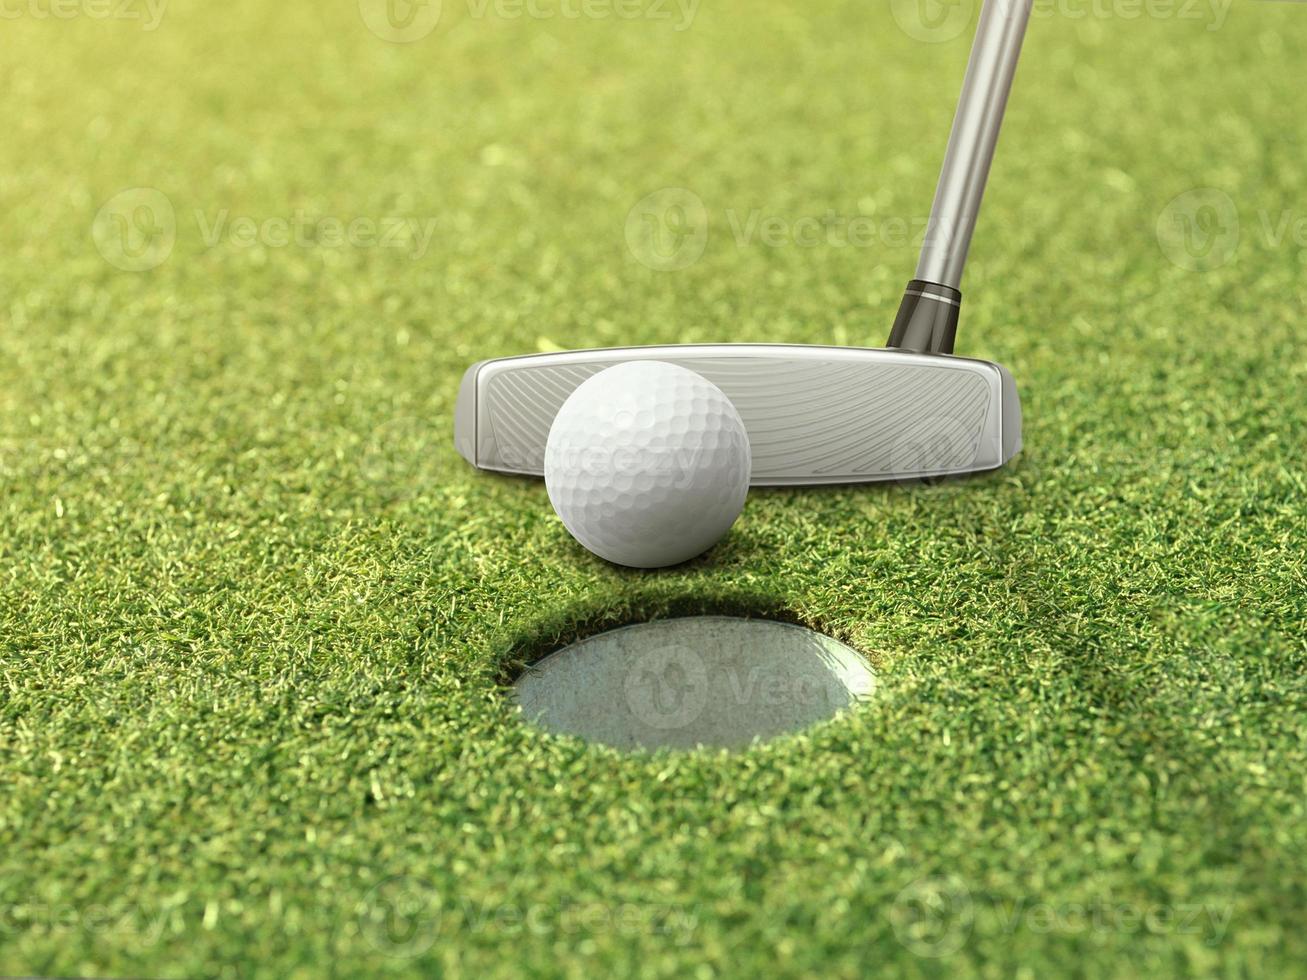 la balle de golf et le putter sont sur l'herbe verte à côté du trou de golf photo